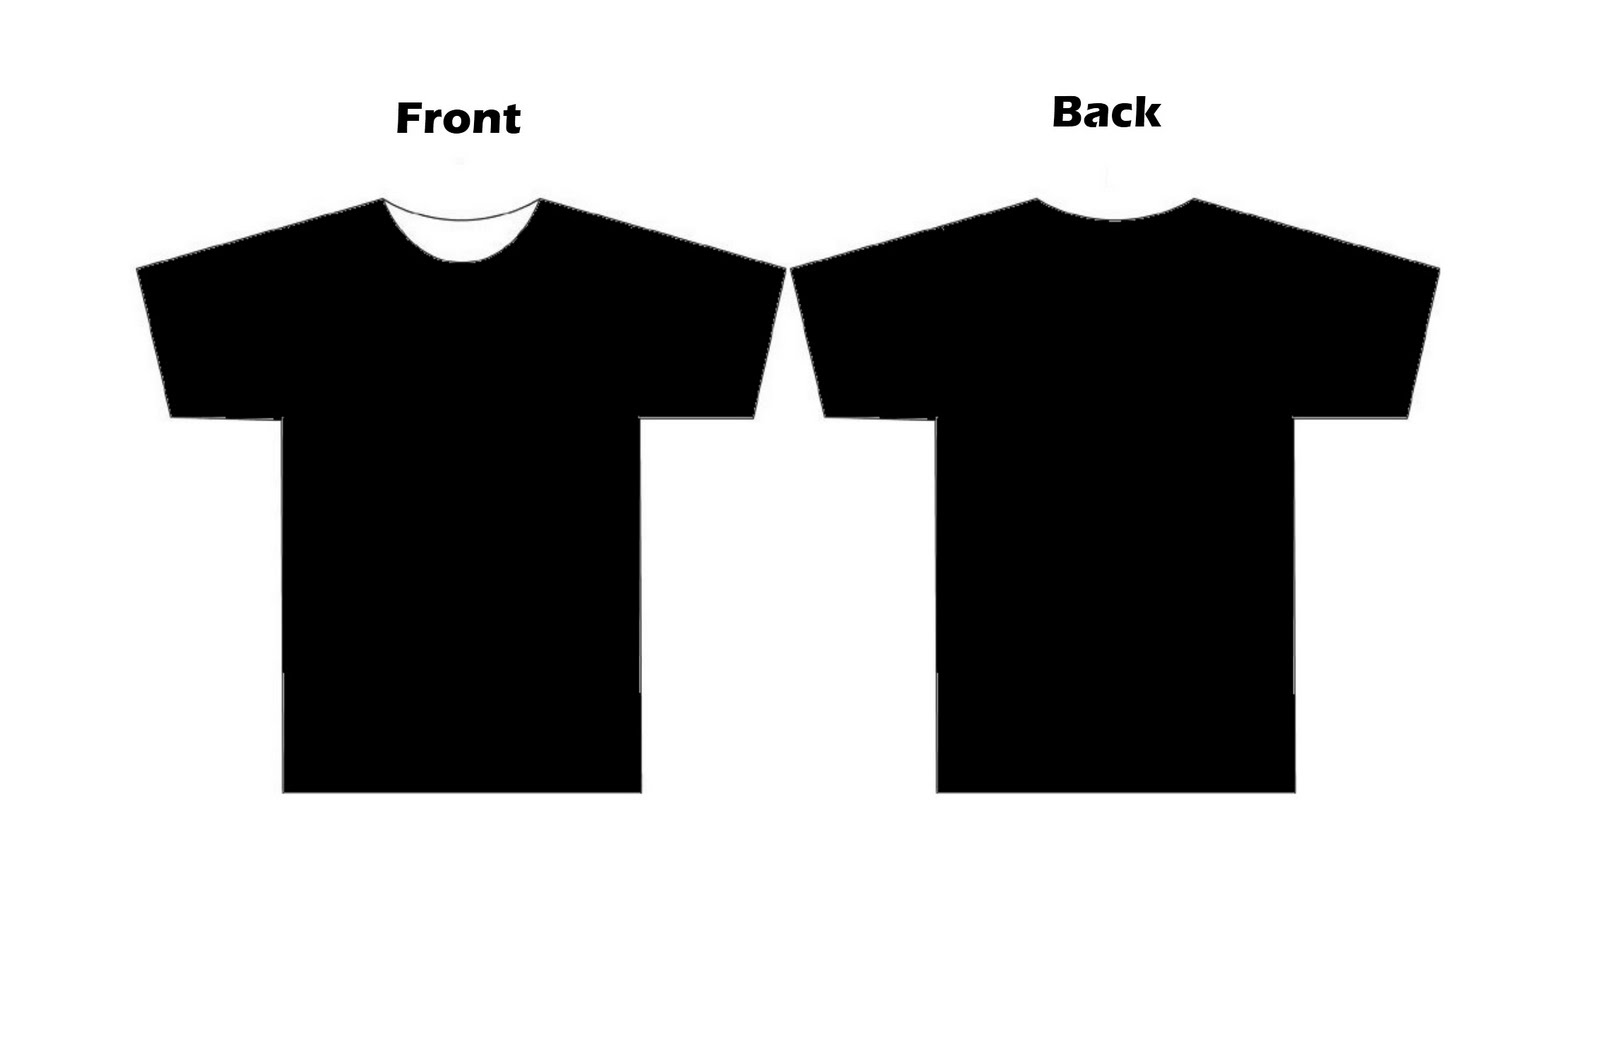 T Shirt Templates - ClipArt Best